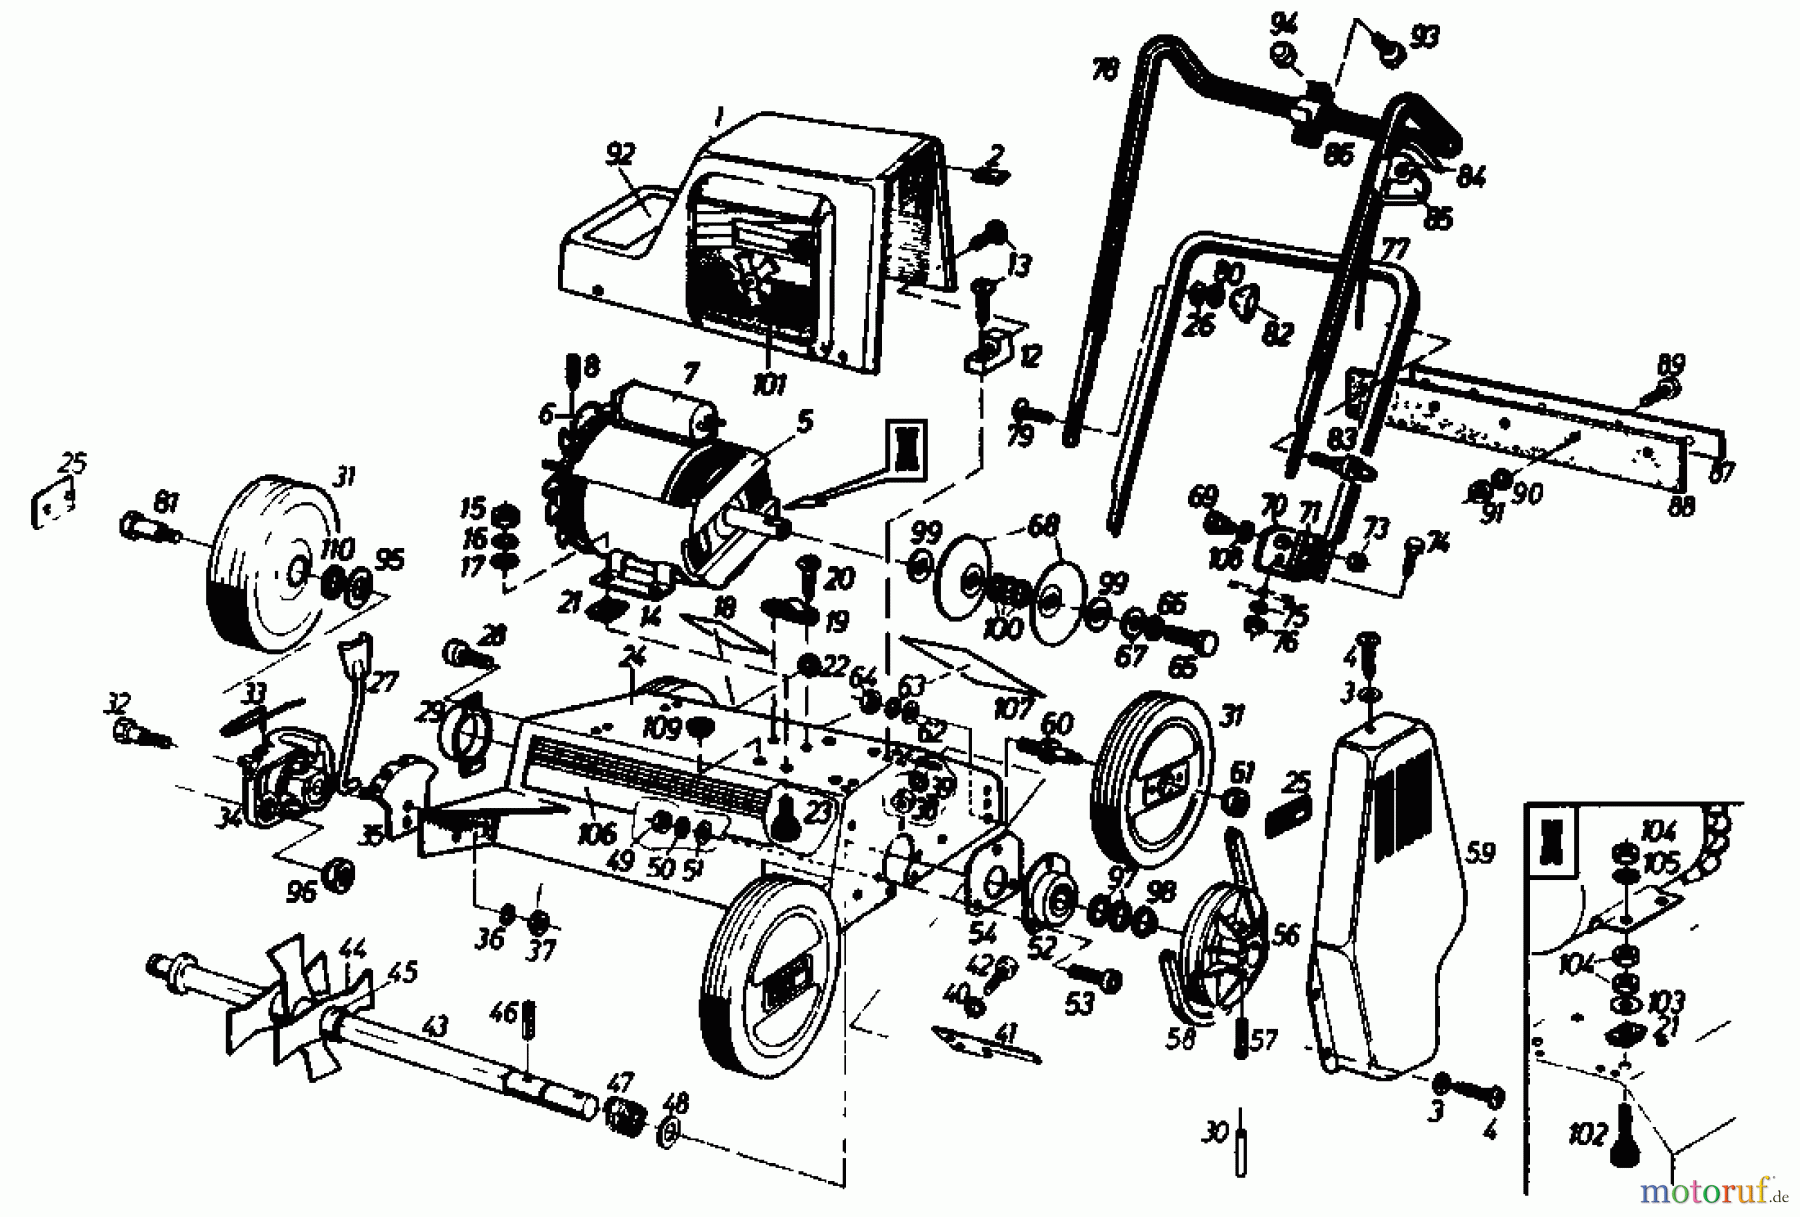  Gutbrod Electric verticutter VS 40 E 02699.06  (1986) Basic machine